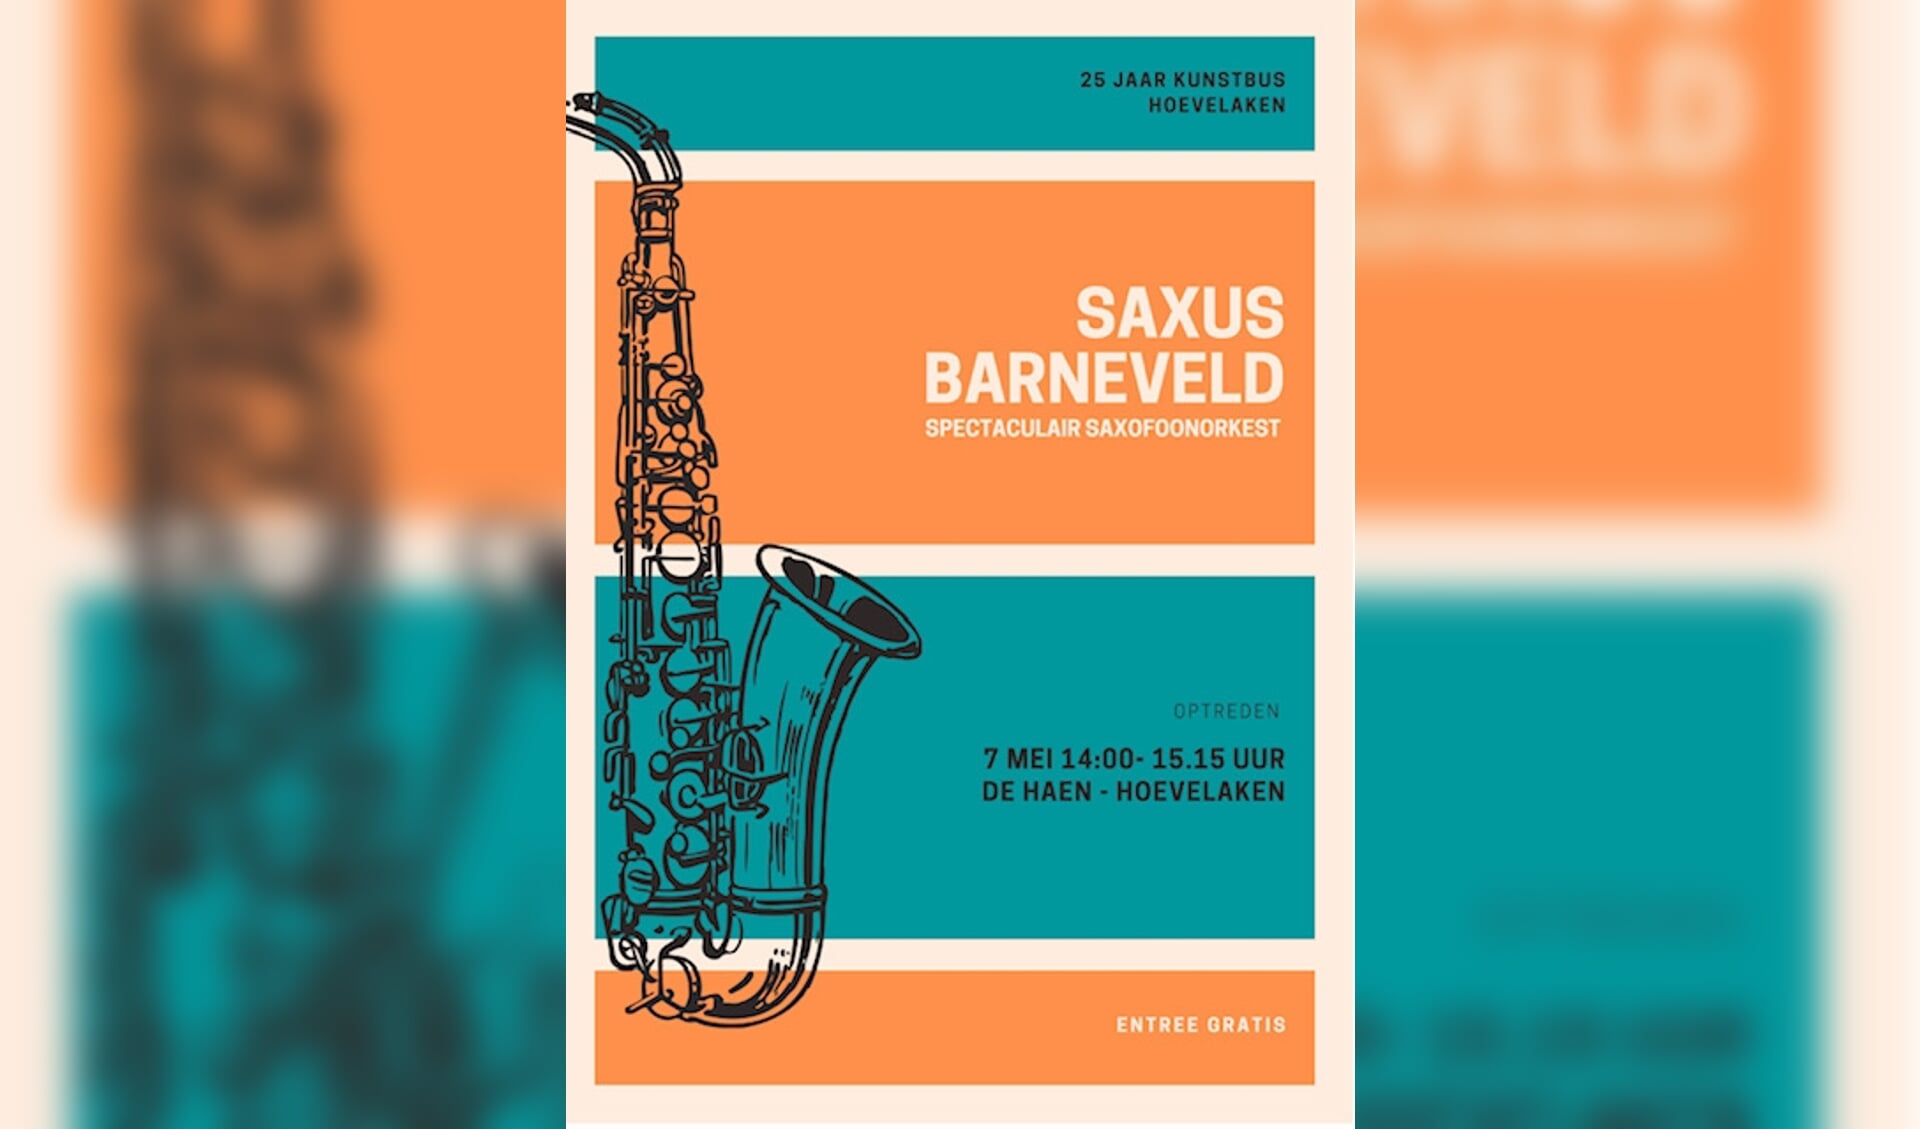 Het concert wordt verzorgd door de saxofoongroep SaxUs uit Barneveld. Deze muziekgroep, behoort tot de grootste saxofoonorkesten van Nederland.